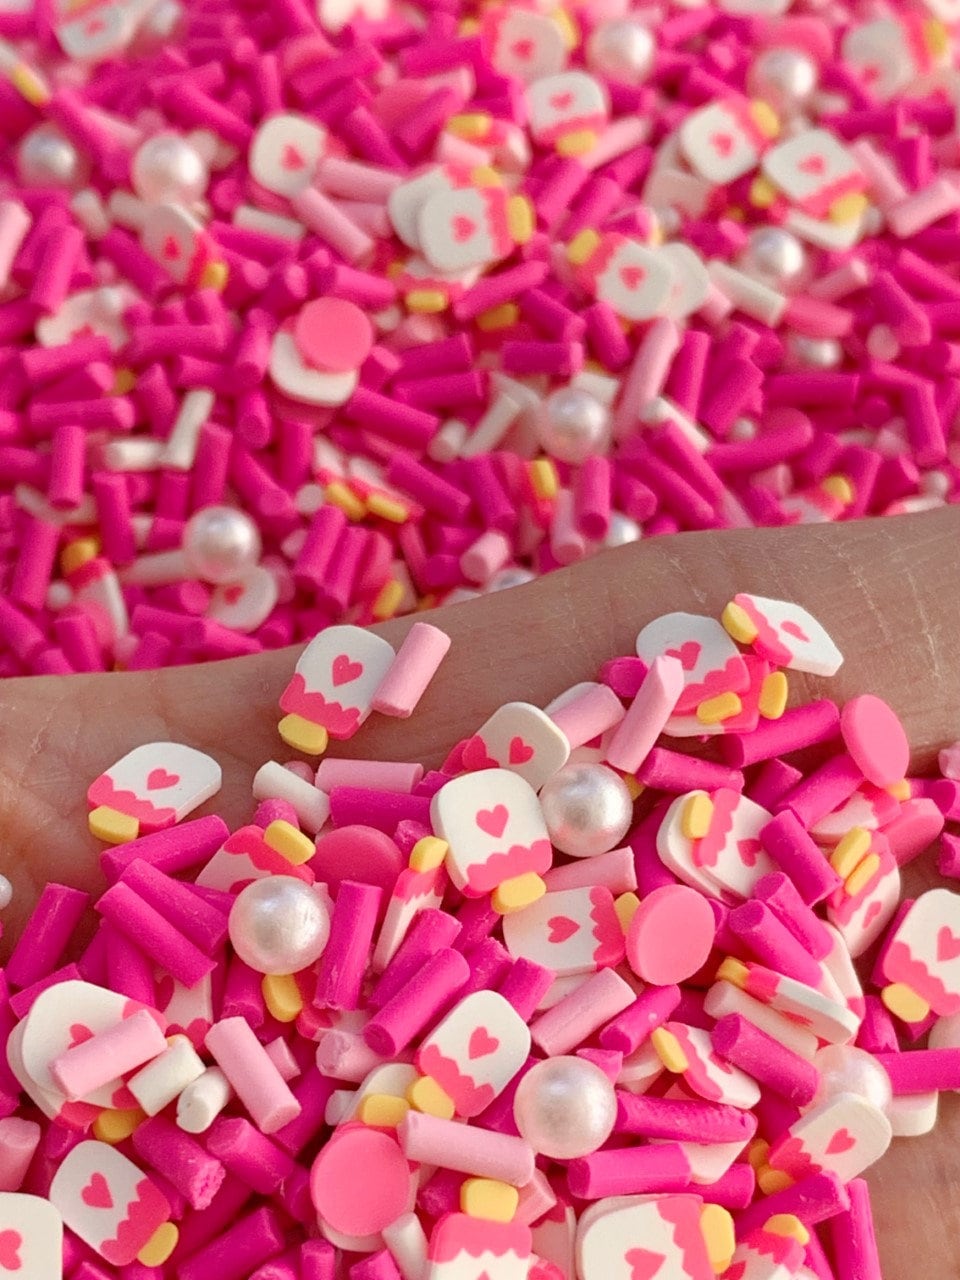 Behogar 100g DIY Polymer Clay Fake Candy Sweets Sugar Sprinkle